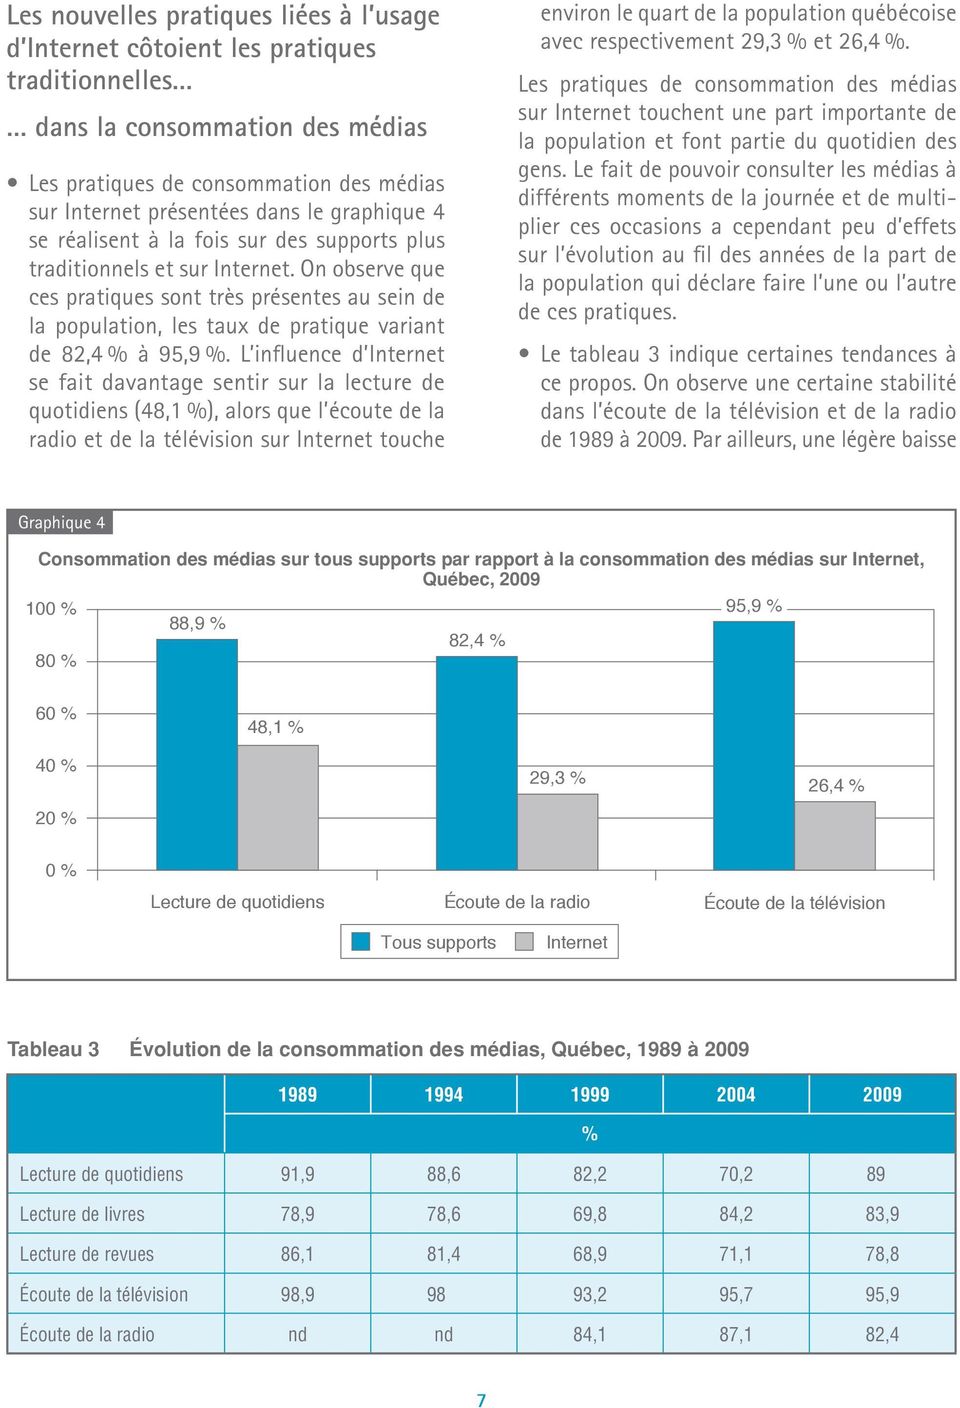 L influence d Internet se fait davantage sentir sur la lecture de quotidiens (48,1 %), alors que l écoute de la radio et de la télévision touche environ le quart de la population québécoise avec